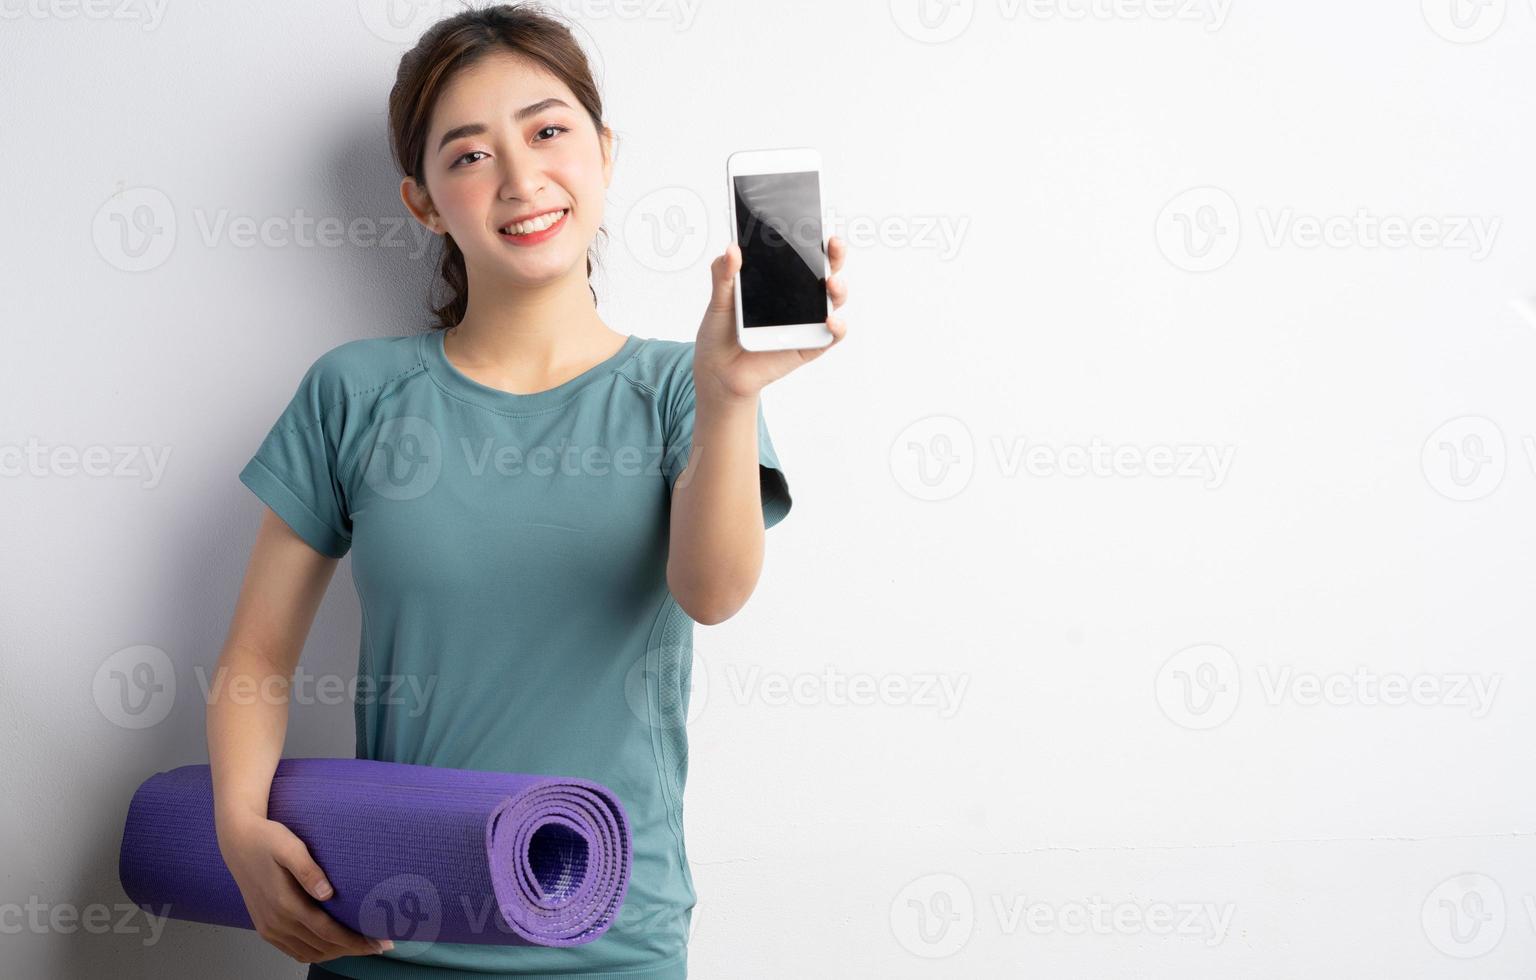 jonge aziatische vrouw die oefening op witte achtergrond doet foto